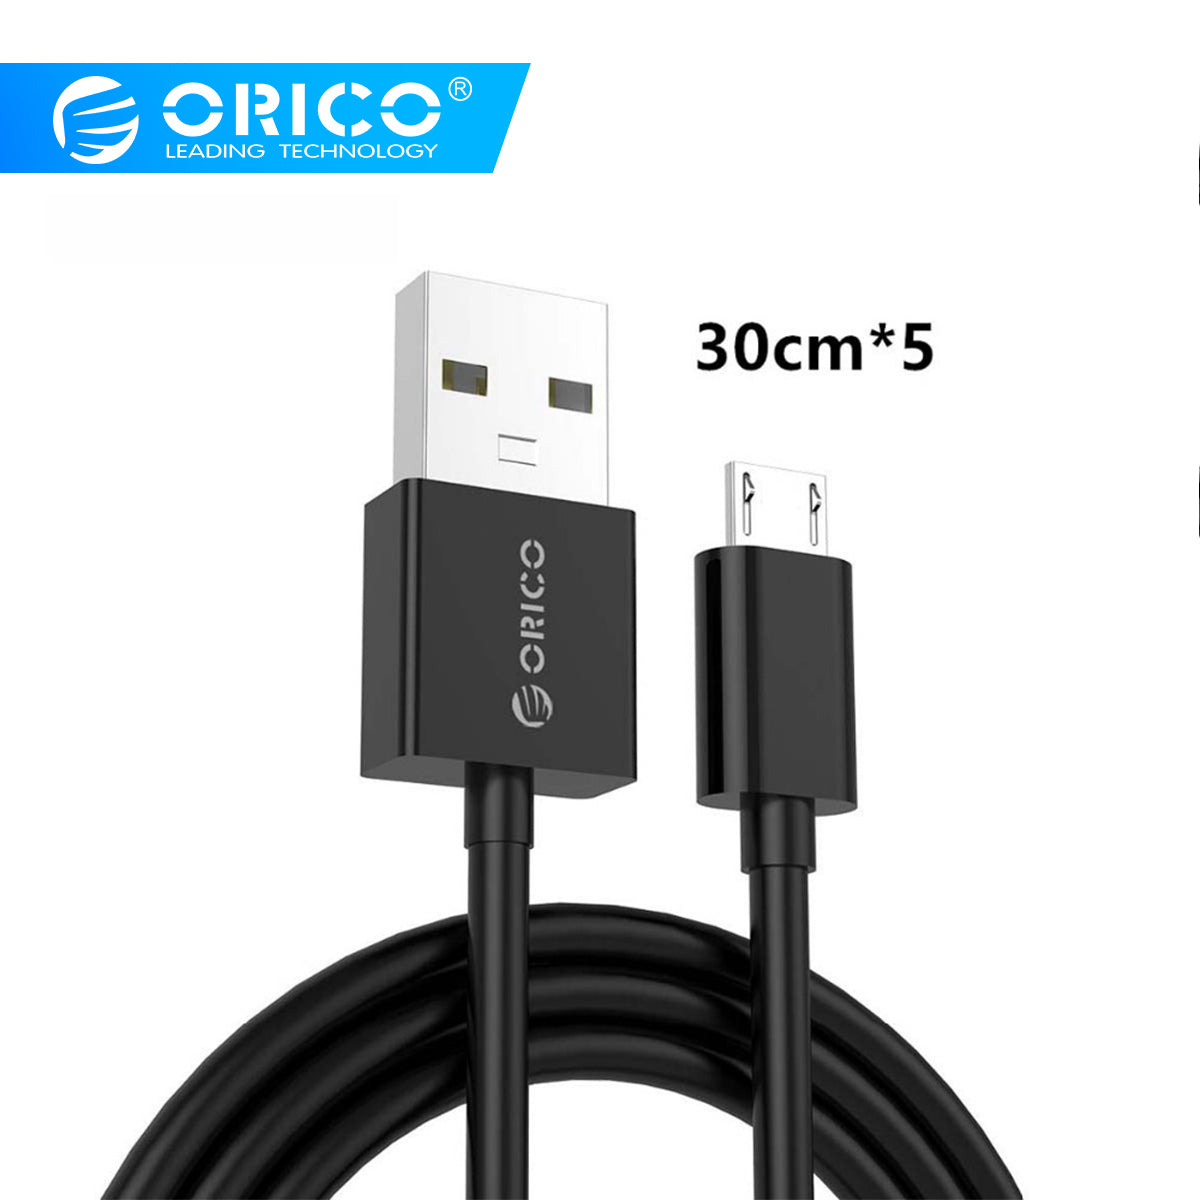 ORICO Micro USB 2.0 充电数据 USB 线 智能手机充电线 30cm*5 - 黑色/白色 适用于 redmi k20 pro